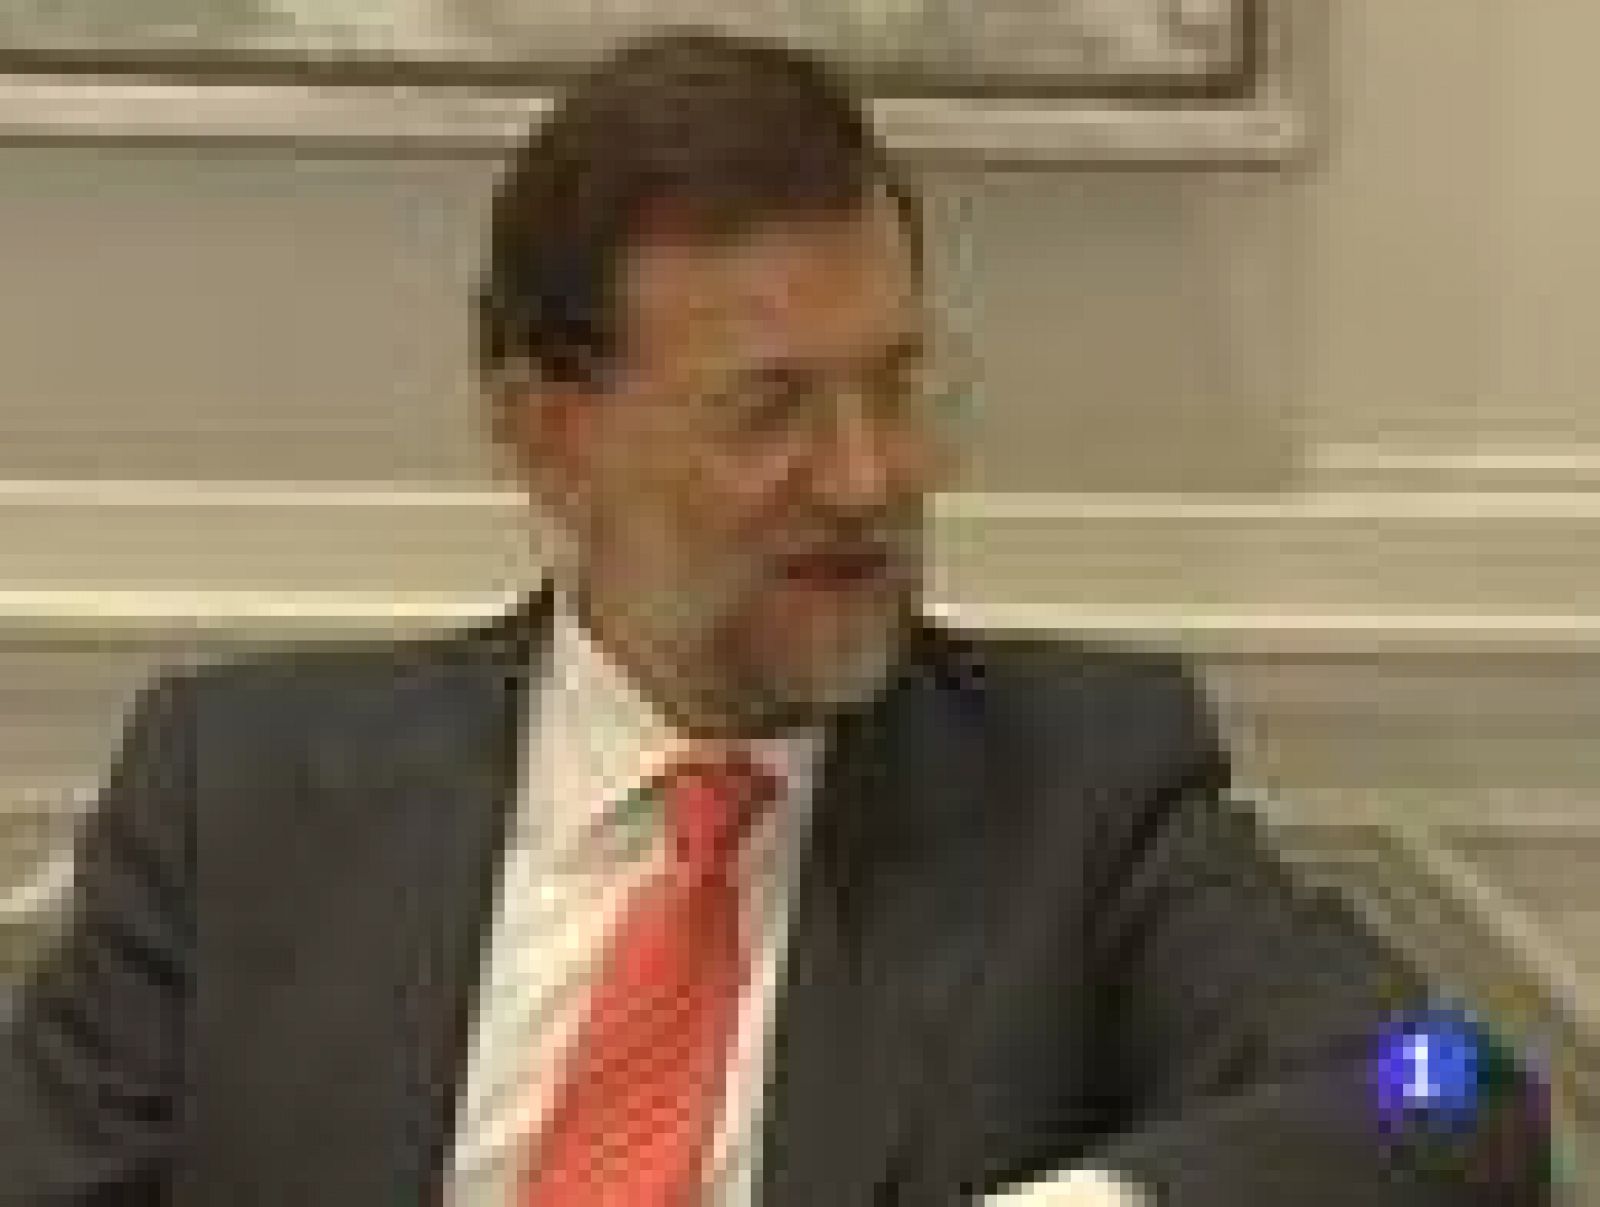 El día 22 de diciembre Mariano Rajoy jurará su cargo